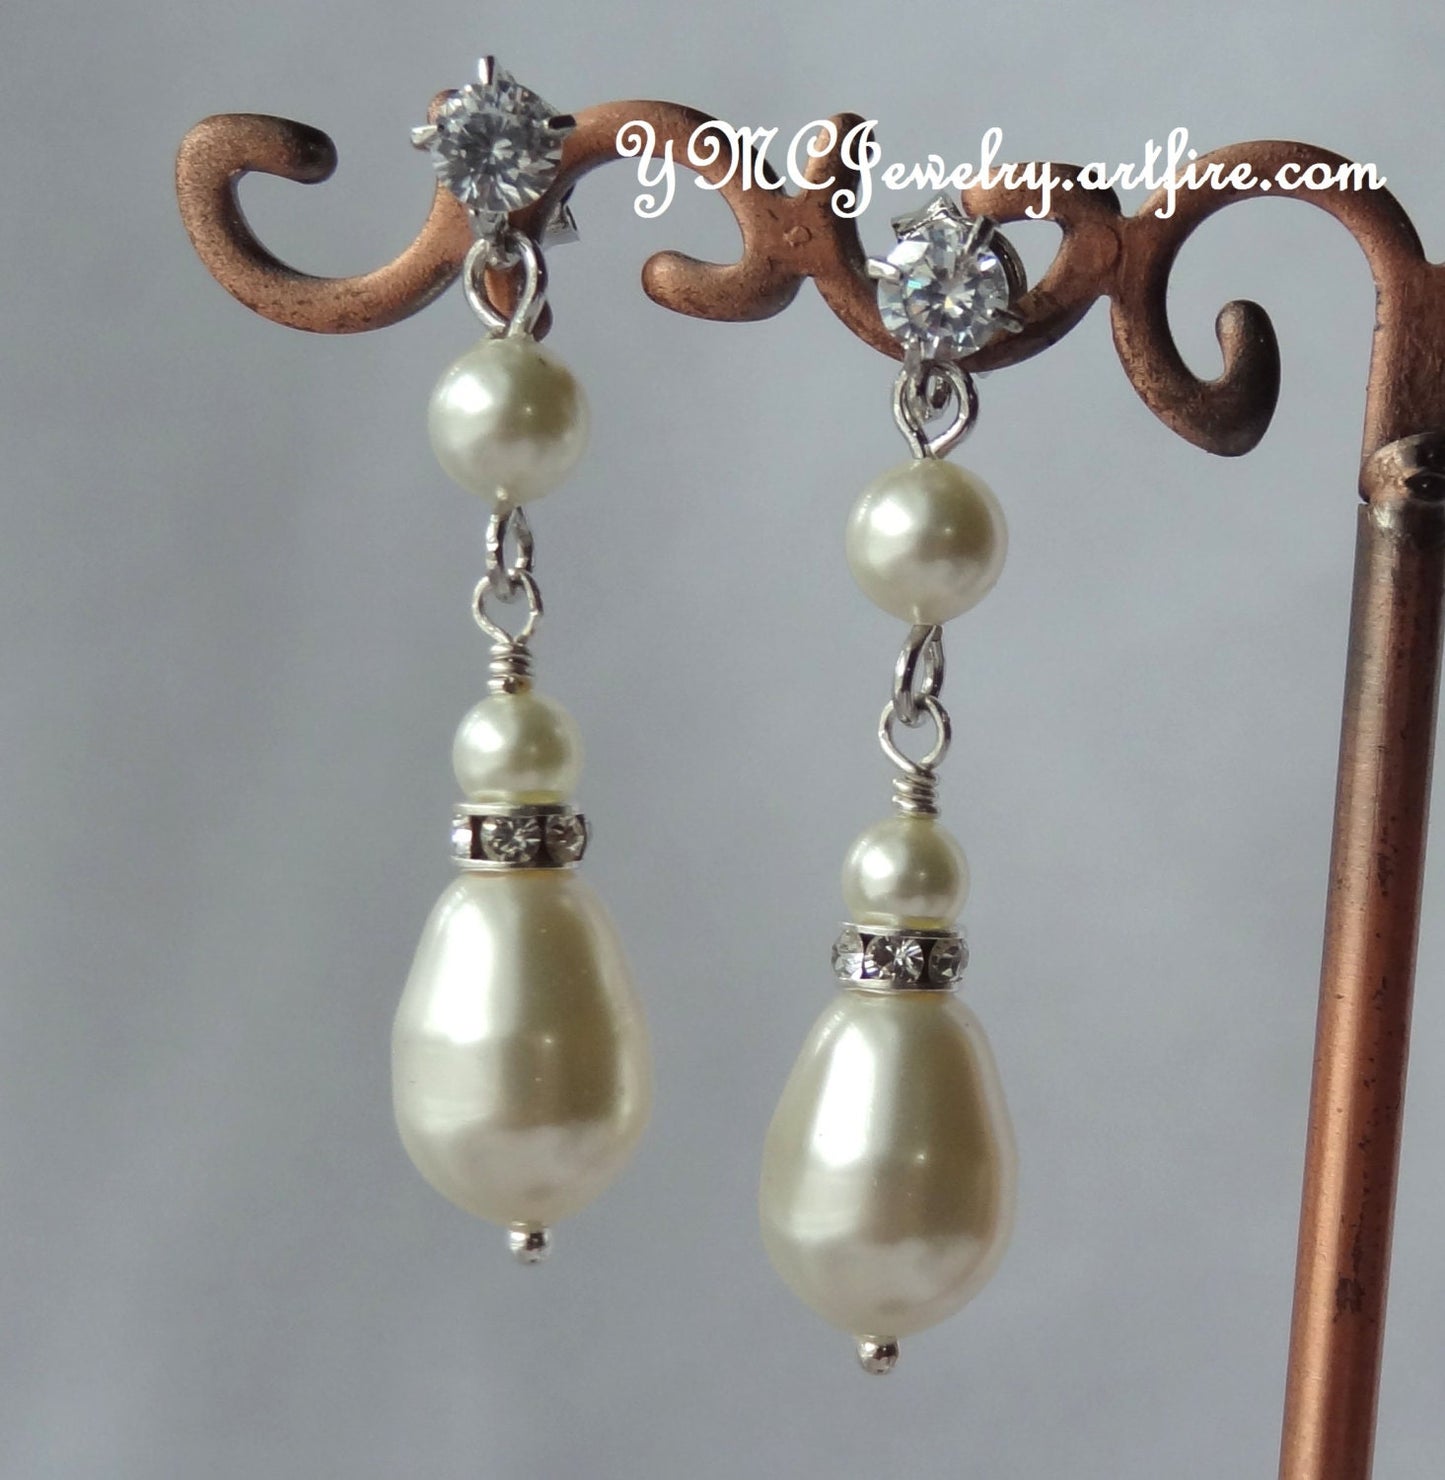 Cubic Zirconia Bride Teardrop Pearl Earrings,Bridesmaid Pearl Gift Set Earrings,Wedding Bridal Pearl Earrings,Large Bridal Pearl Earrings